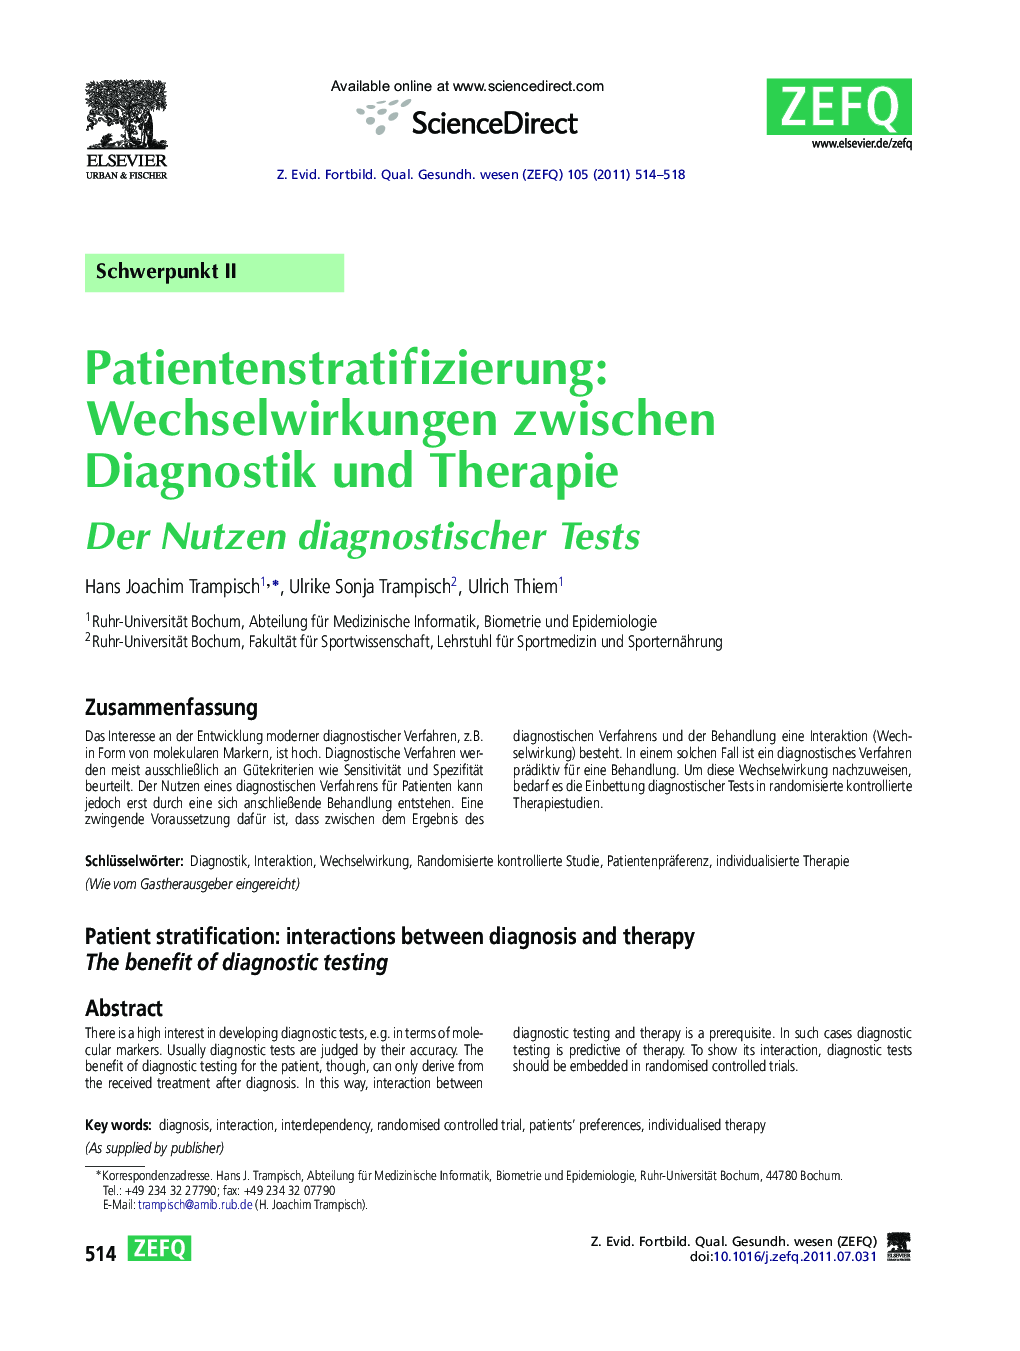 Patientenstratifizierung: Wechselwirkungen zwischen Diagnostik und Therapie: Der Nutzen diagnostischer Tests